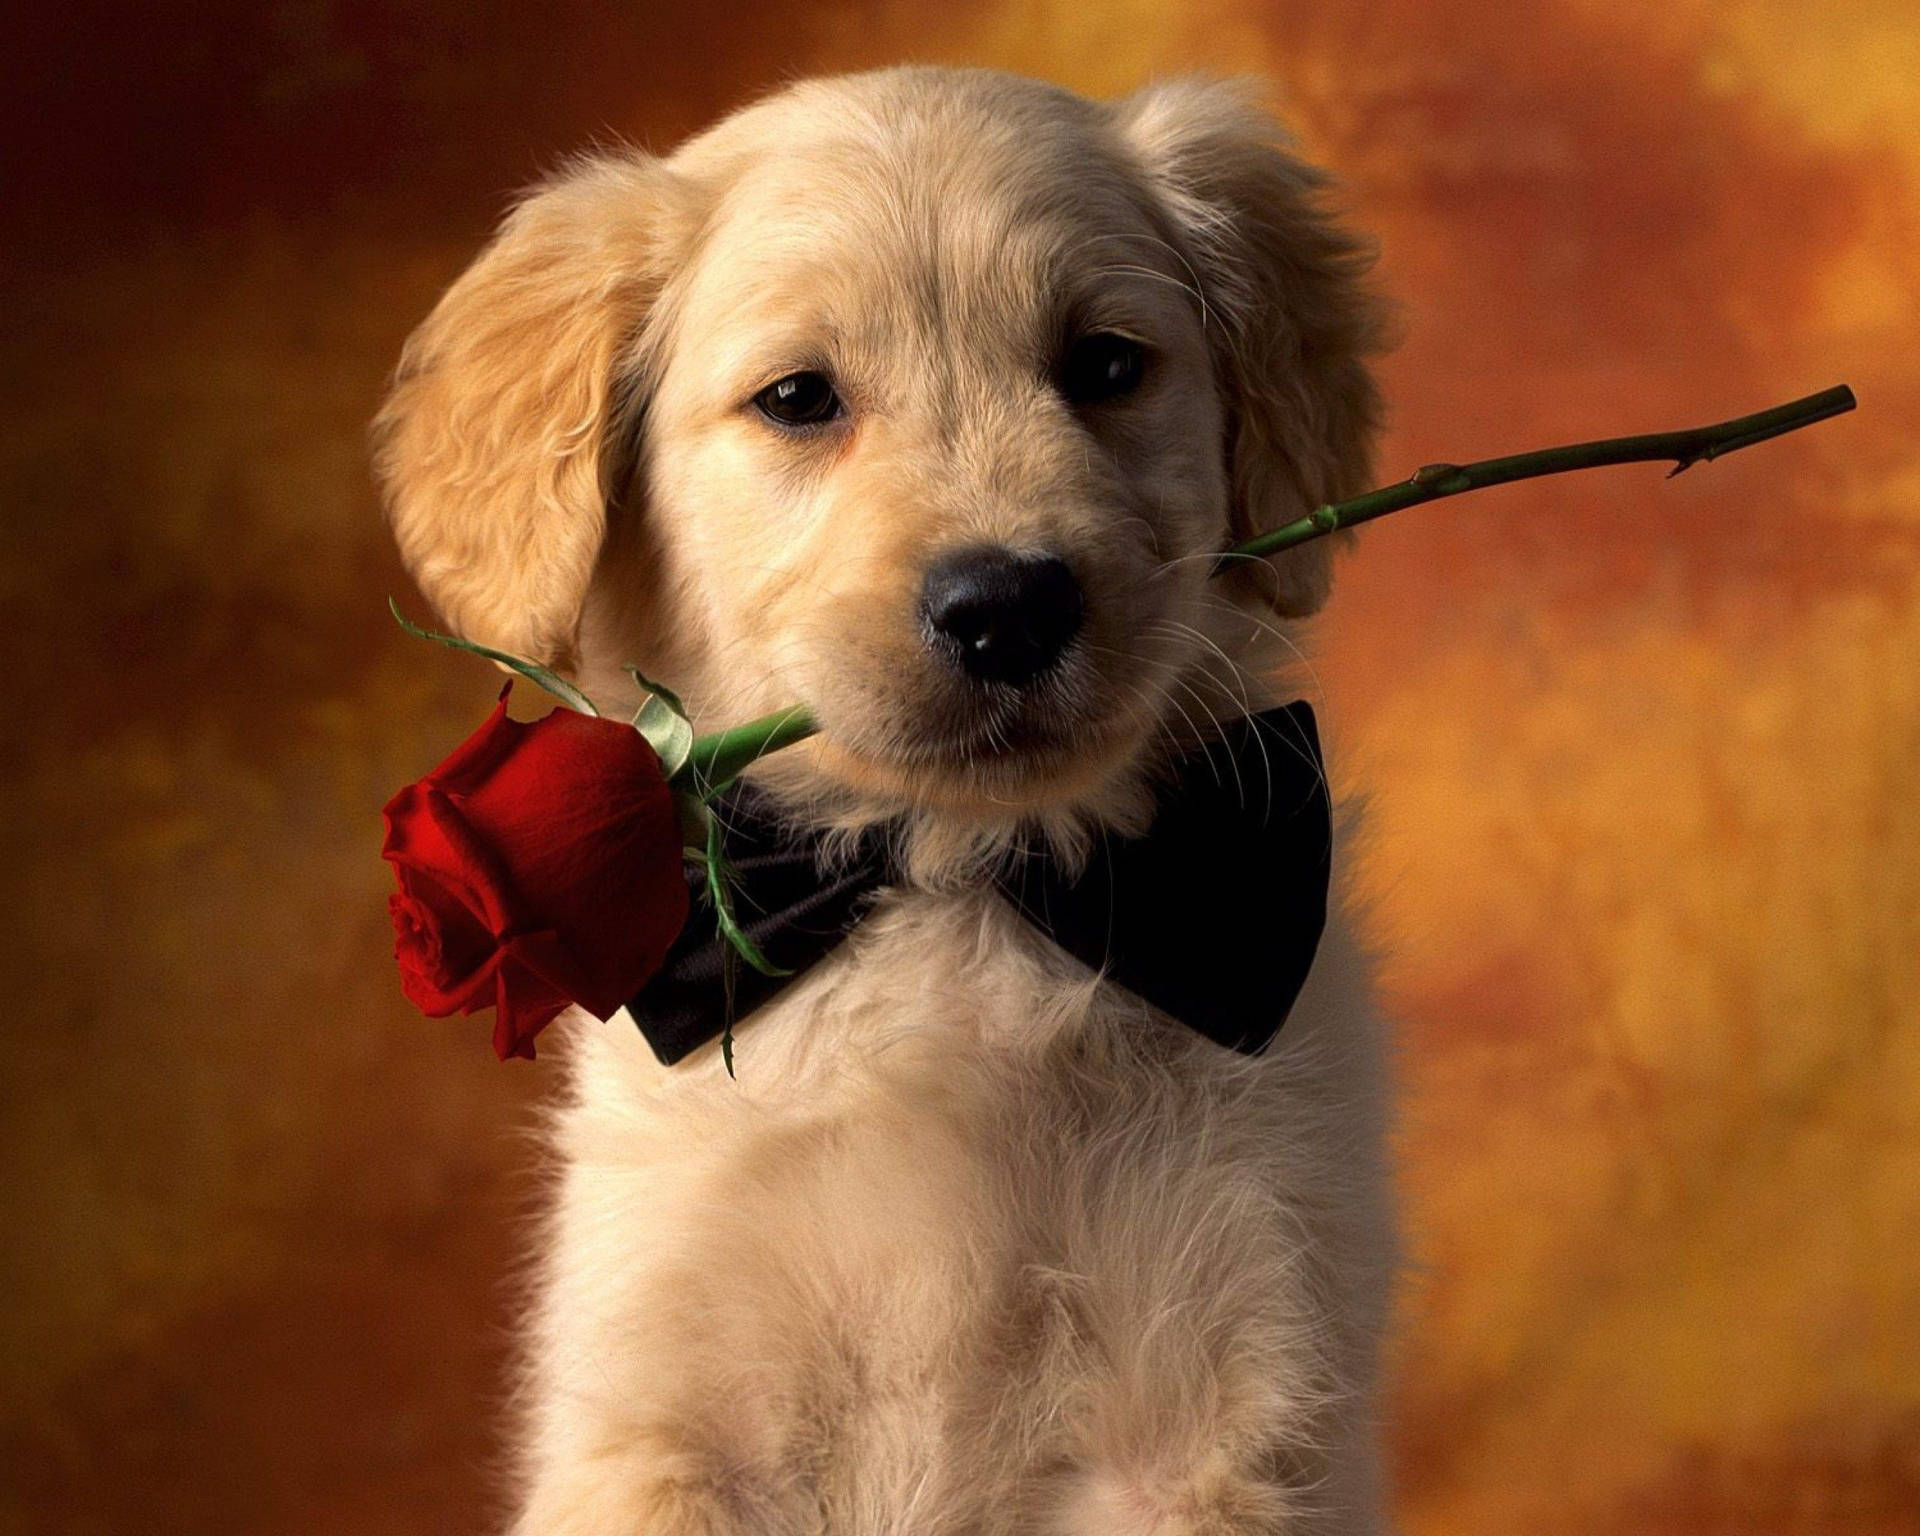 Bạn yêu thích chó cưng và hoa hồng? Nếu có, hãy đến với hình nền chó cưng với hoa hồng này! Chú chó đáng yêu chắc chắn sẽ đem lại niềm vui cho bạn cùng bức hình nền tuyệt đẹp này.